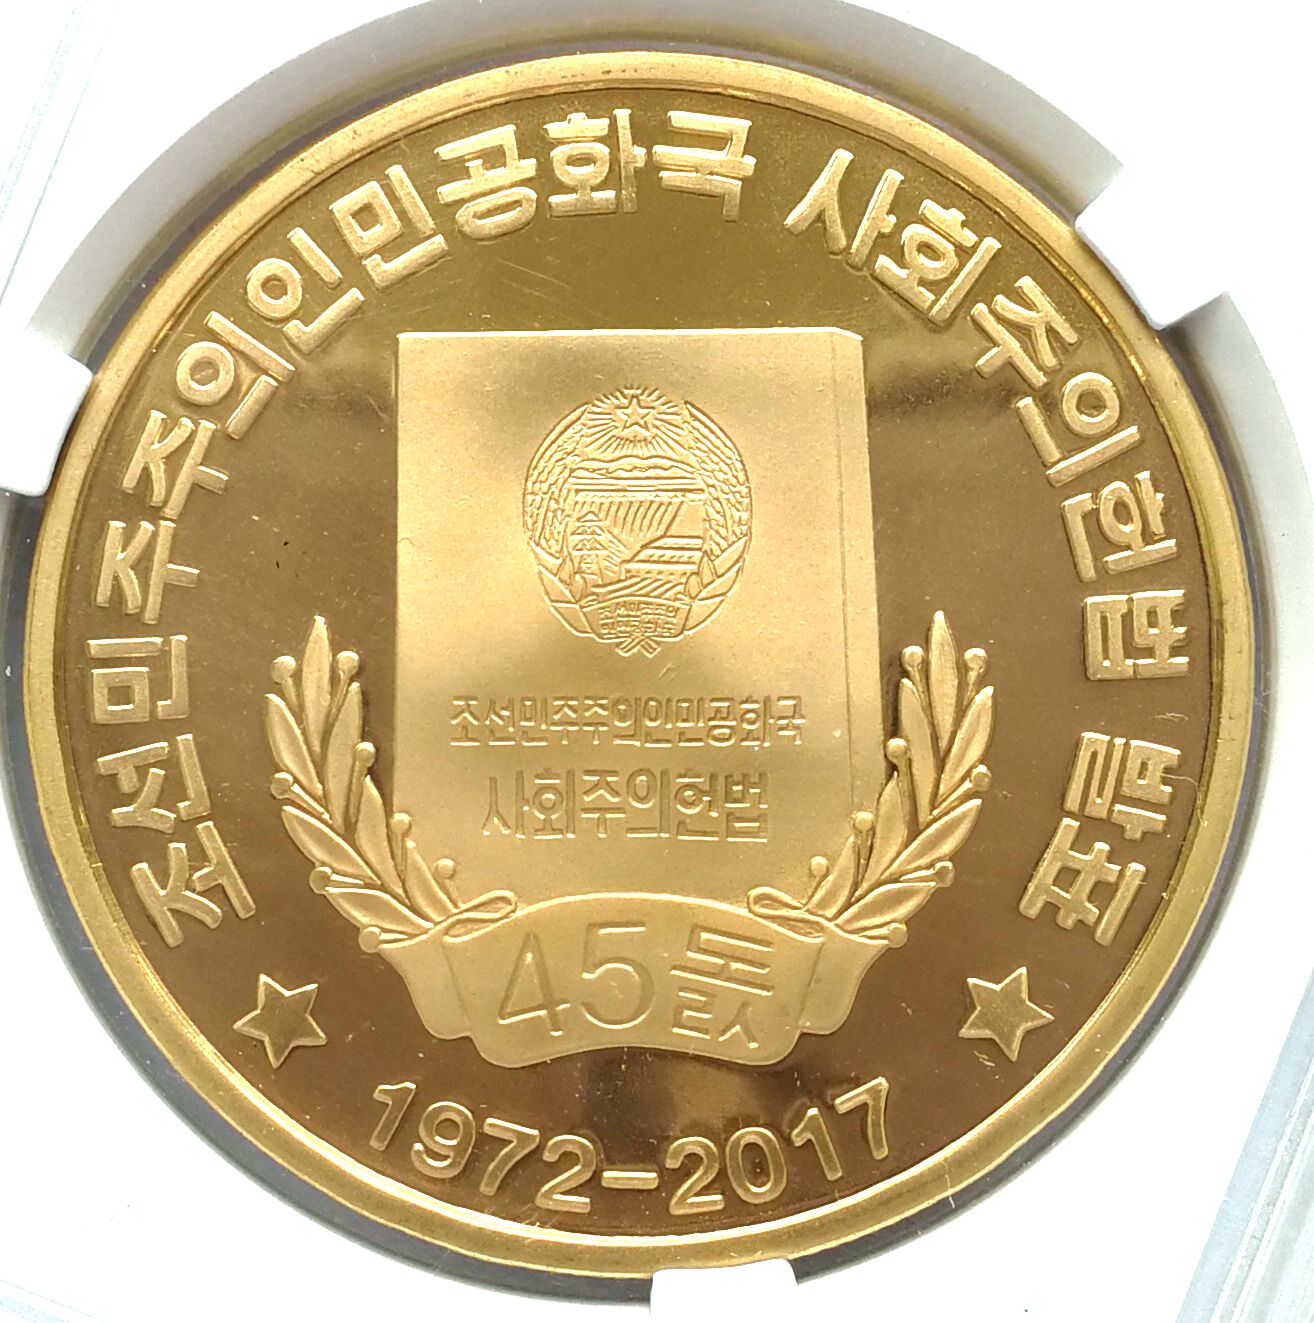 L3300, Korea Proof Coin "45th Anni. Constitution", Bronze 2017, Korean Grade